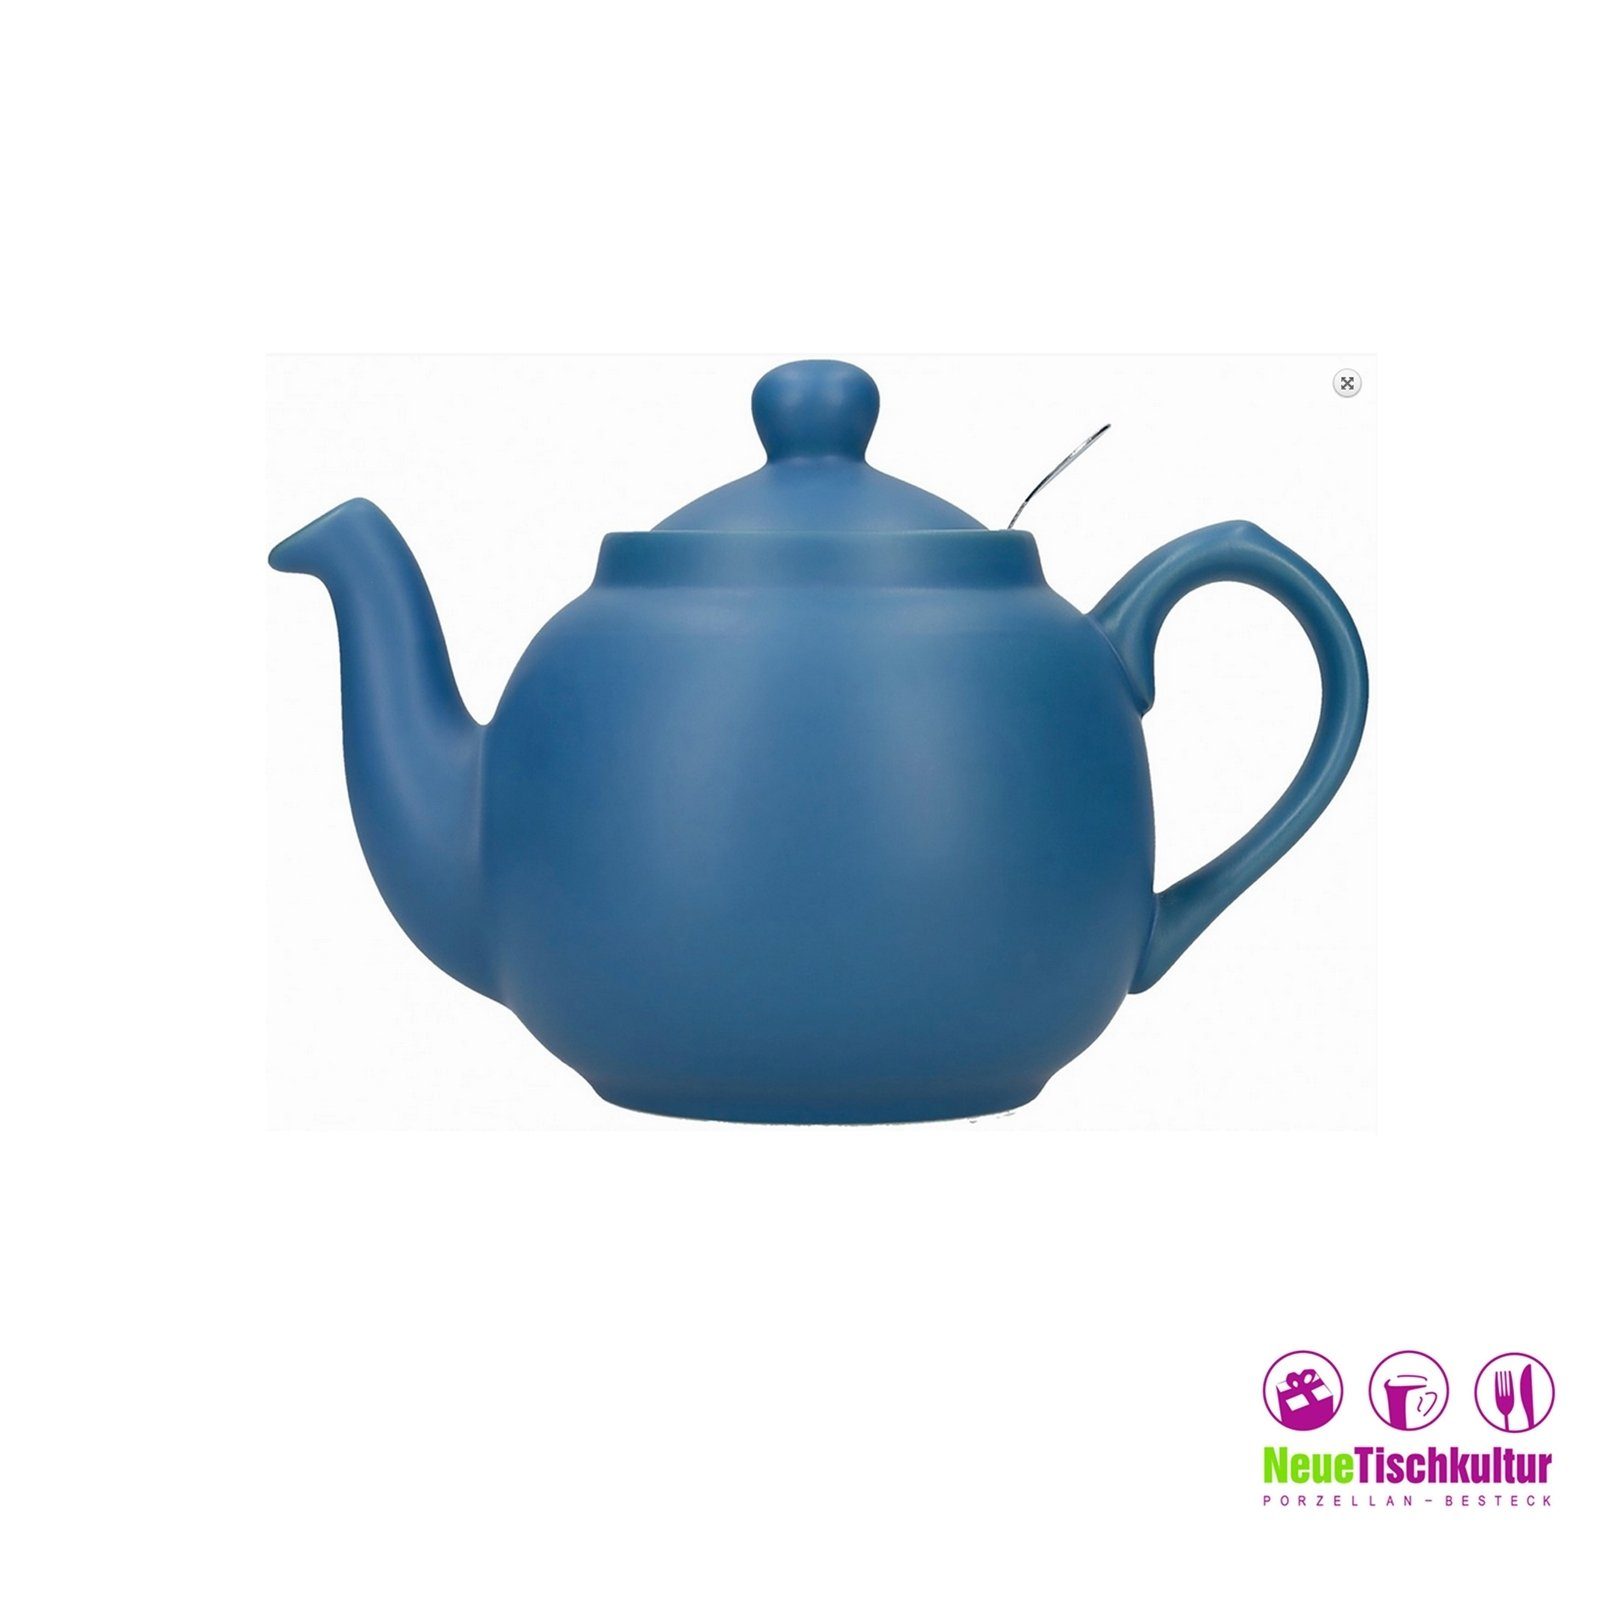 Neuetischkultur Blau Nordisch 6 1.5 für Teekanne Teekanne, l Keramik/Edelstahlsieb, Tassen,